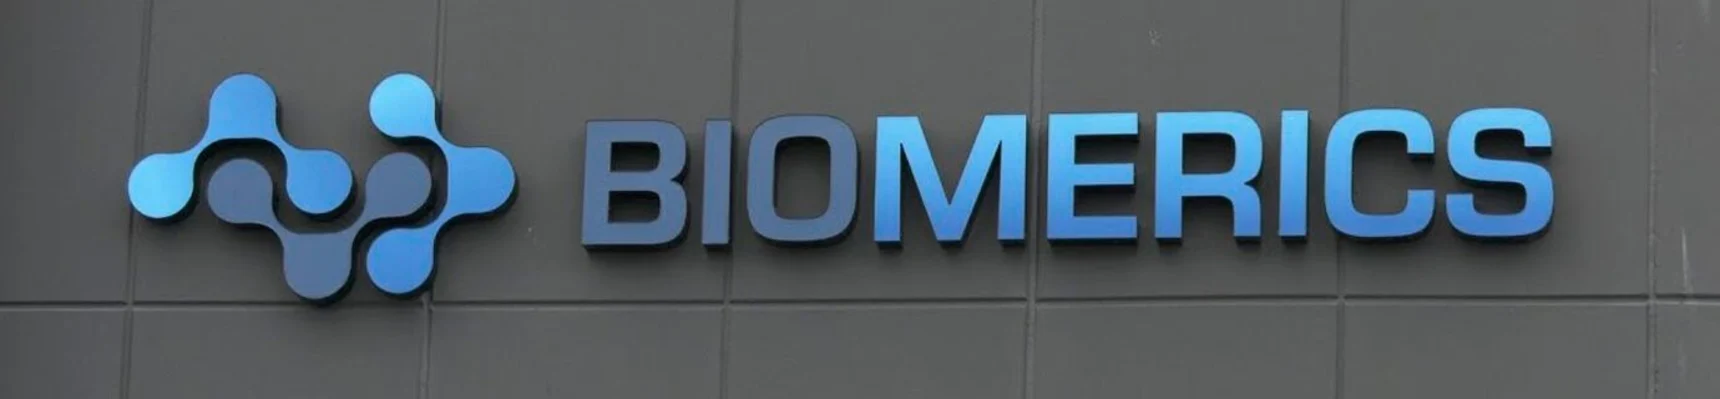 Biomerics banner